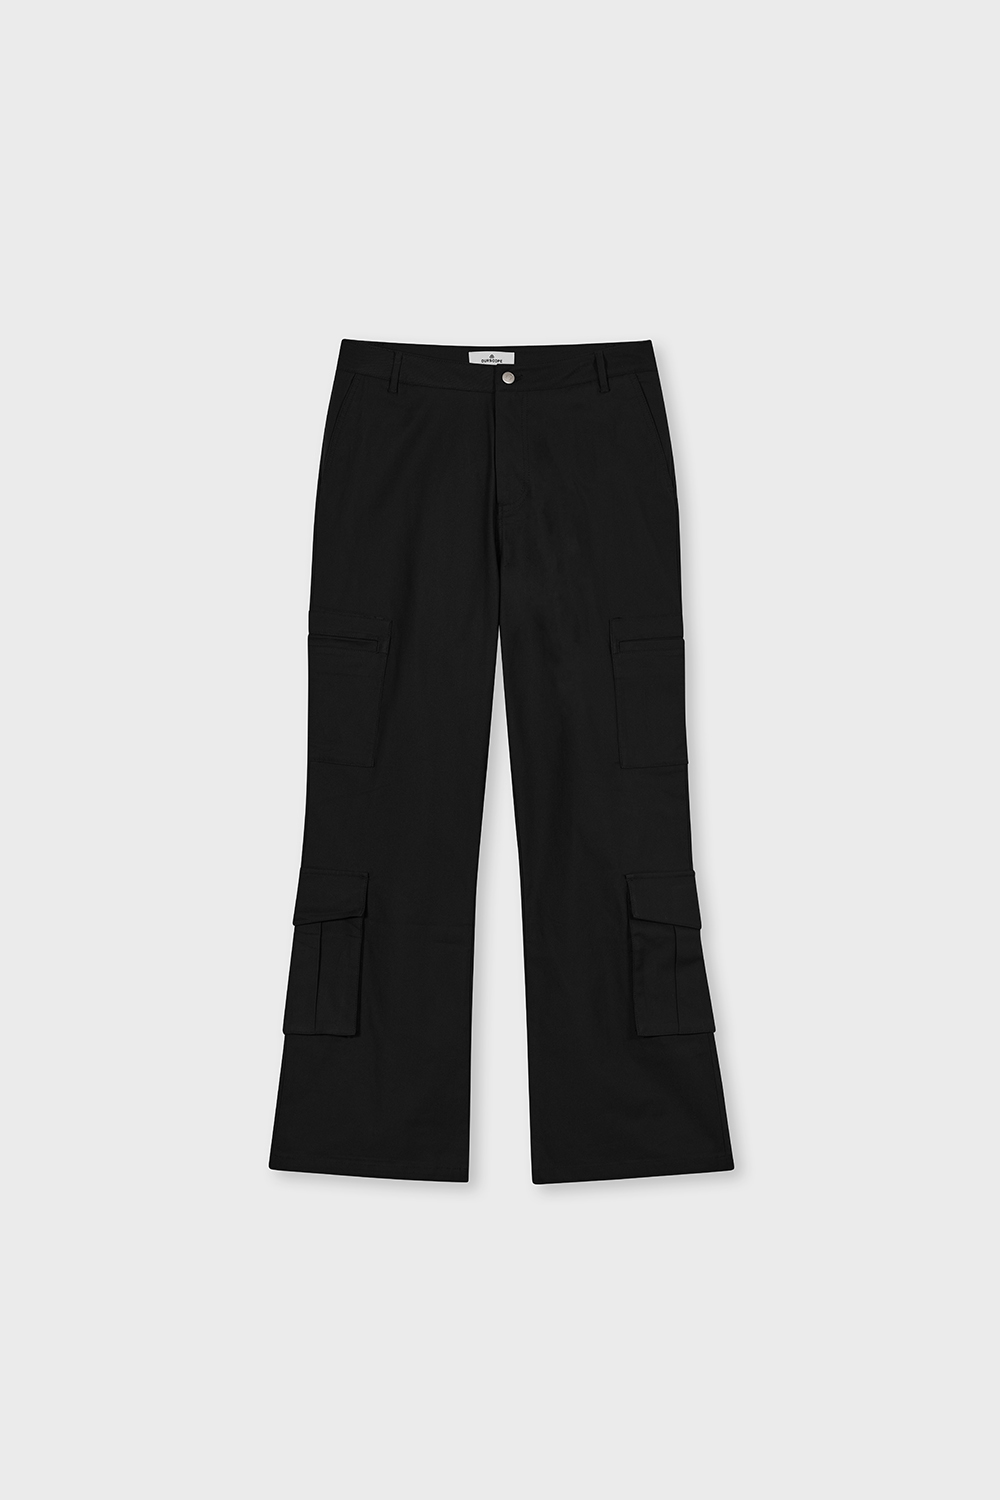 DIG 8-Pocket Cargo Pants (Black)